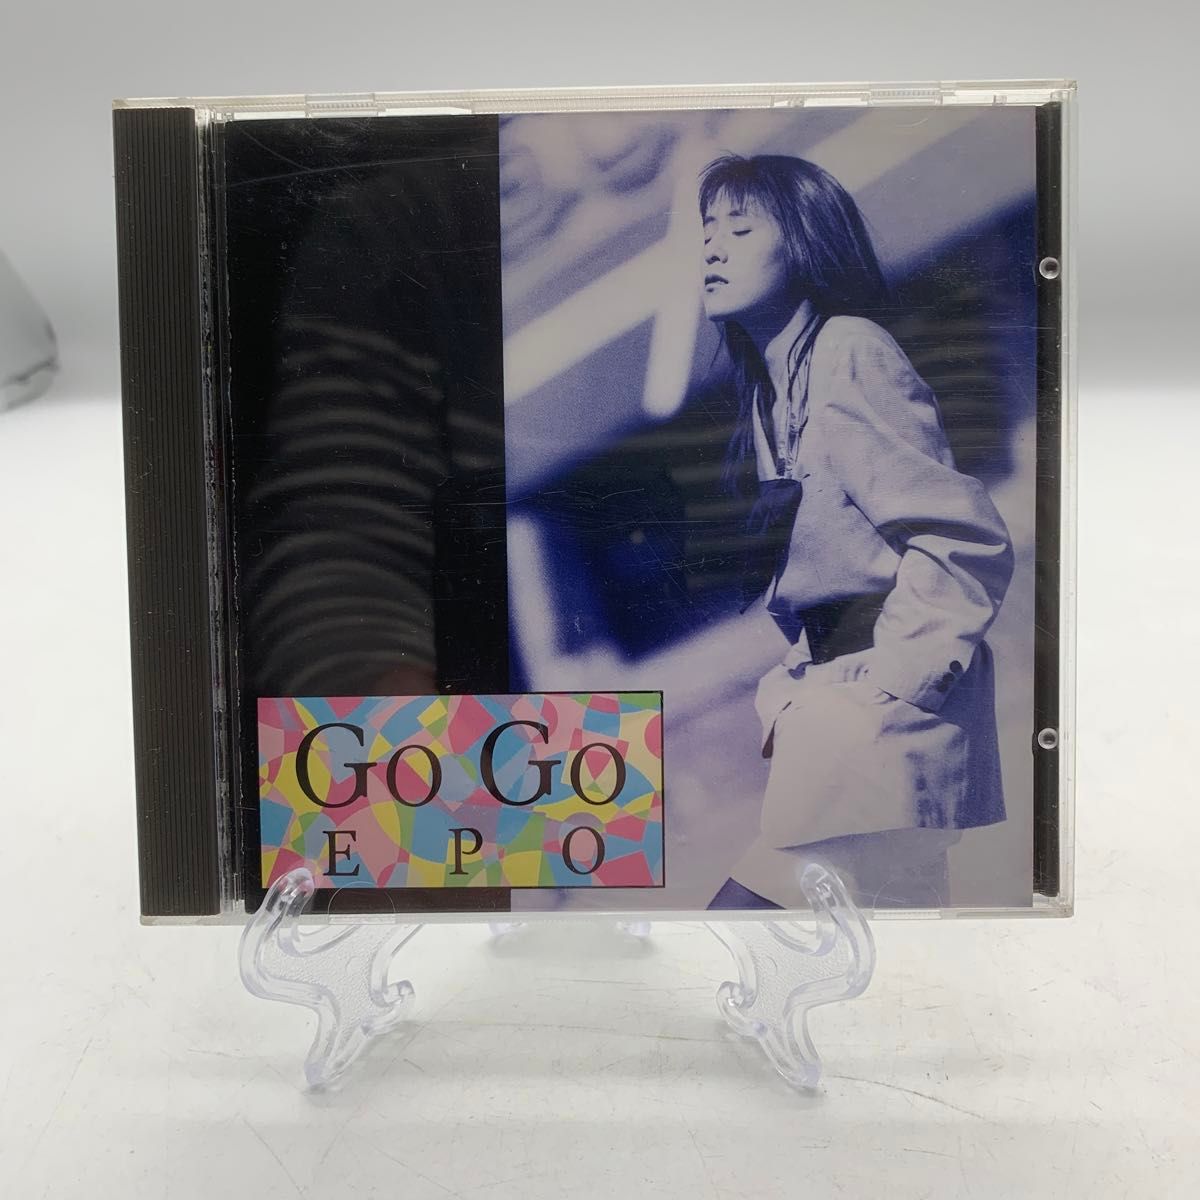 CD Go Go  EPO ゴーゴーエポ